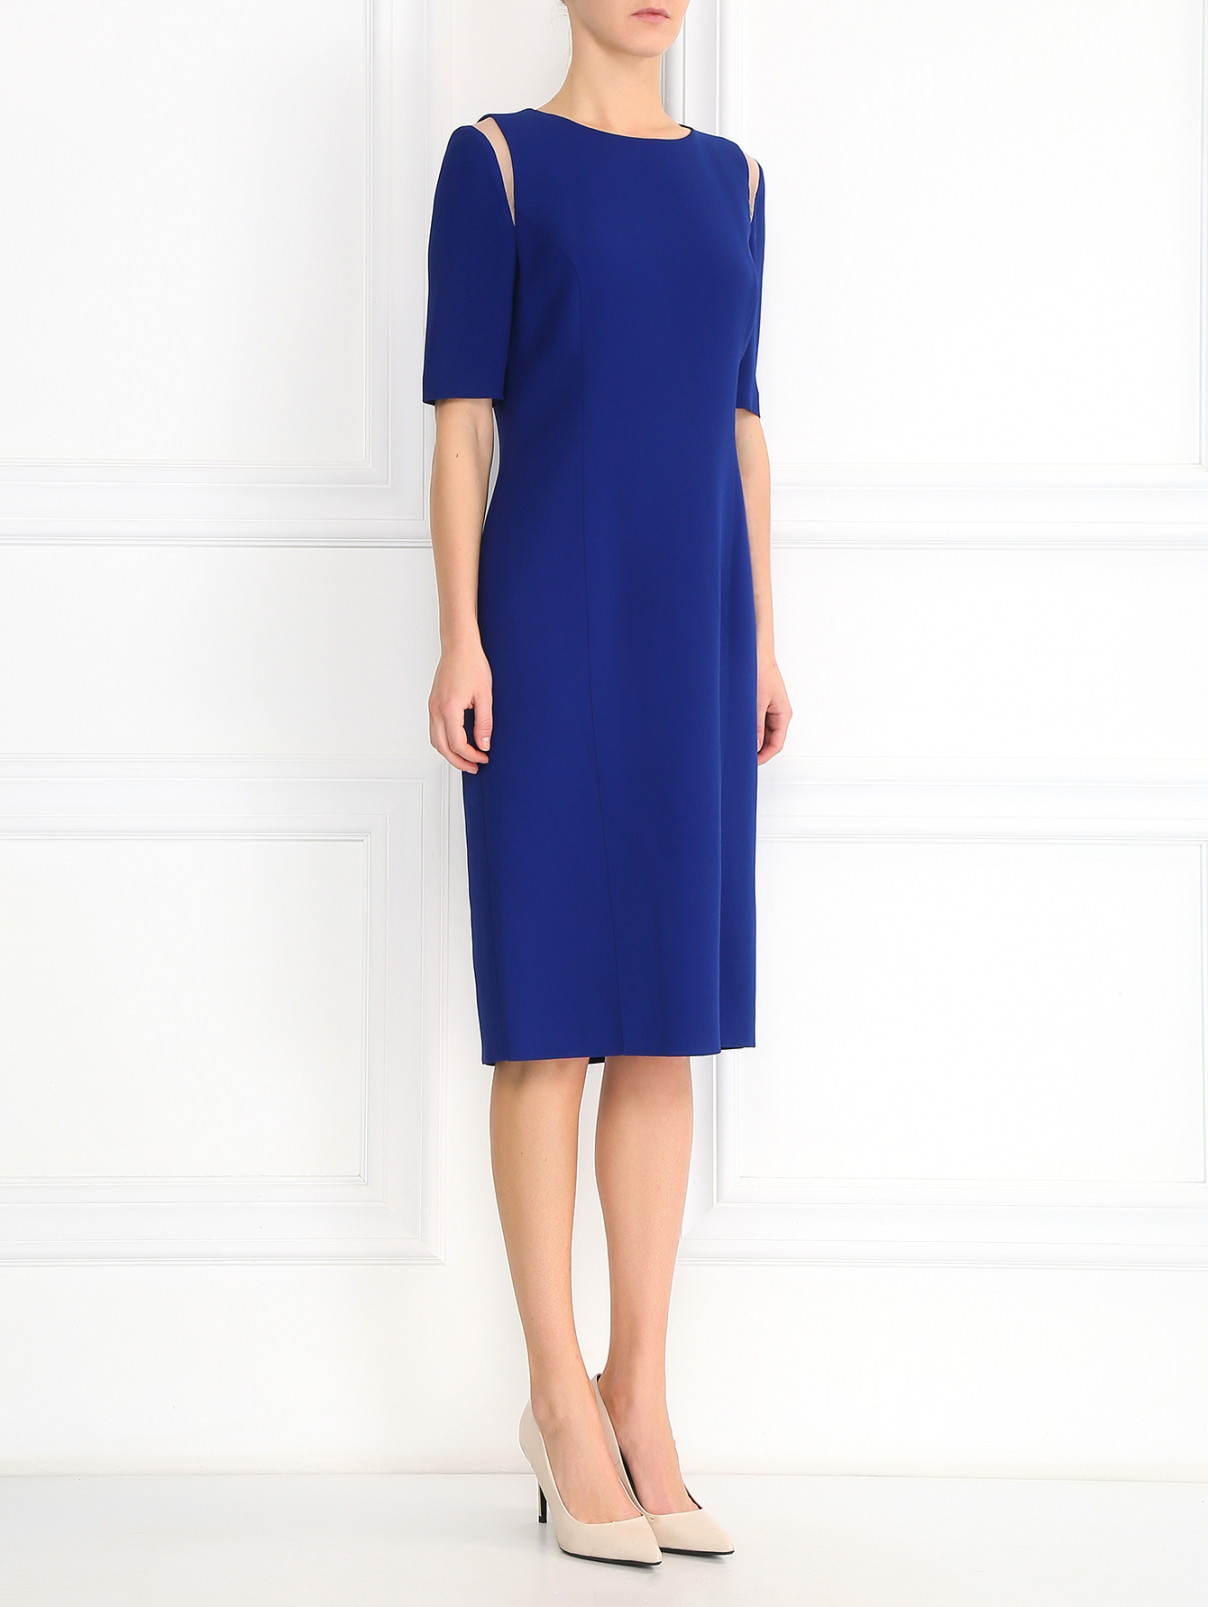 Платье-миди с контрастными вставками Andrew GN  –  Модель Общий вид  – Цвет:  Синий